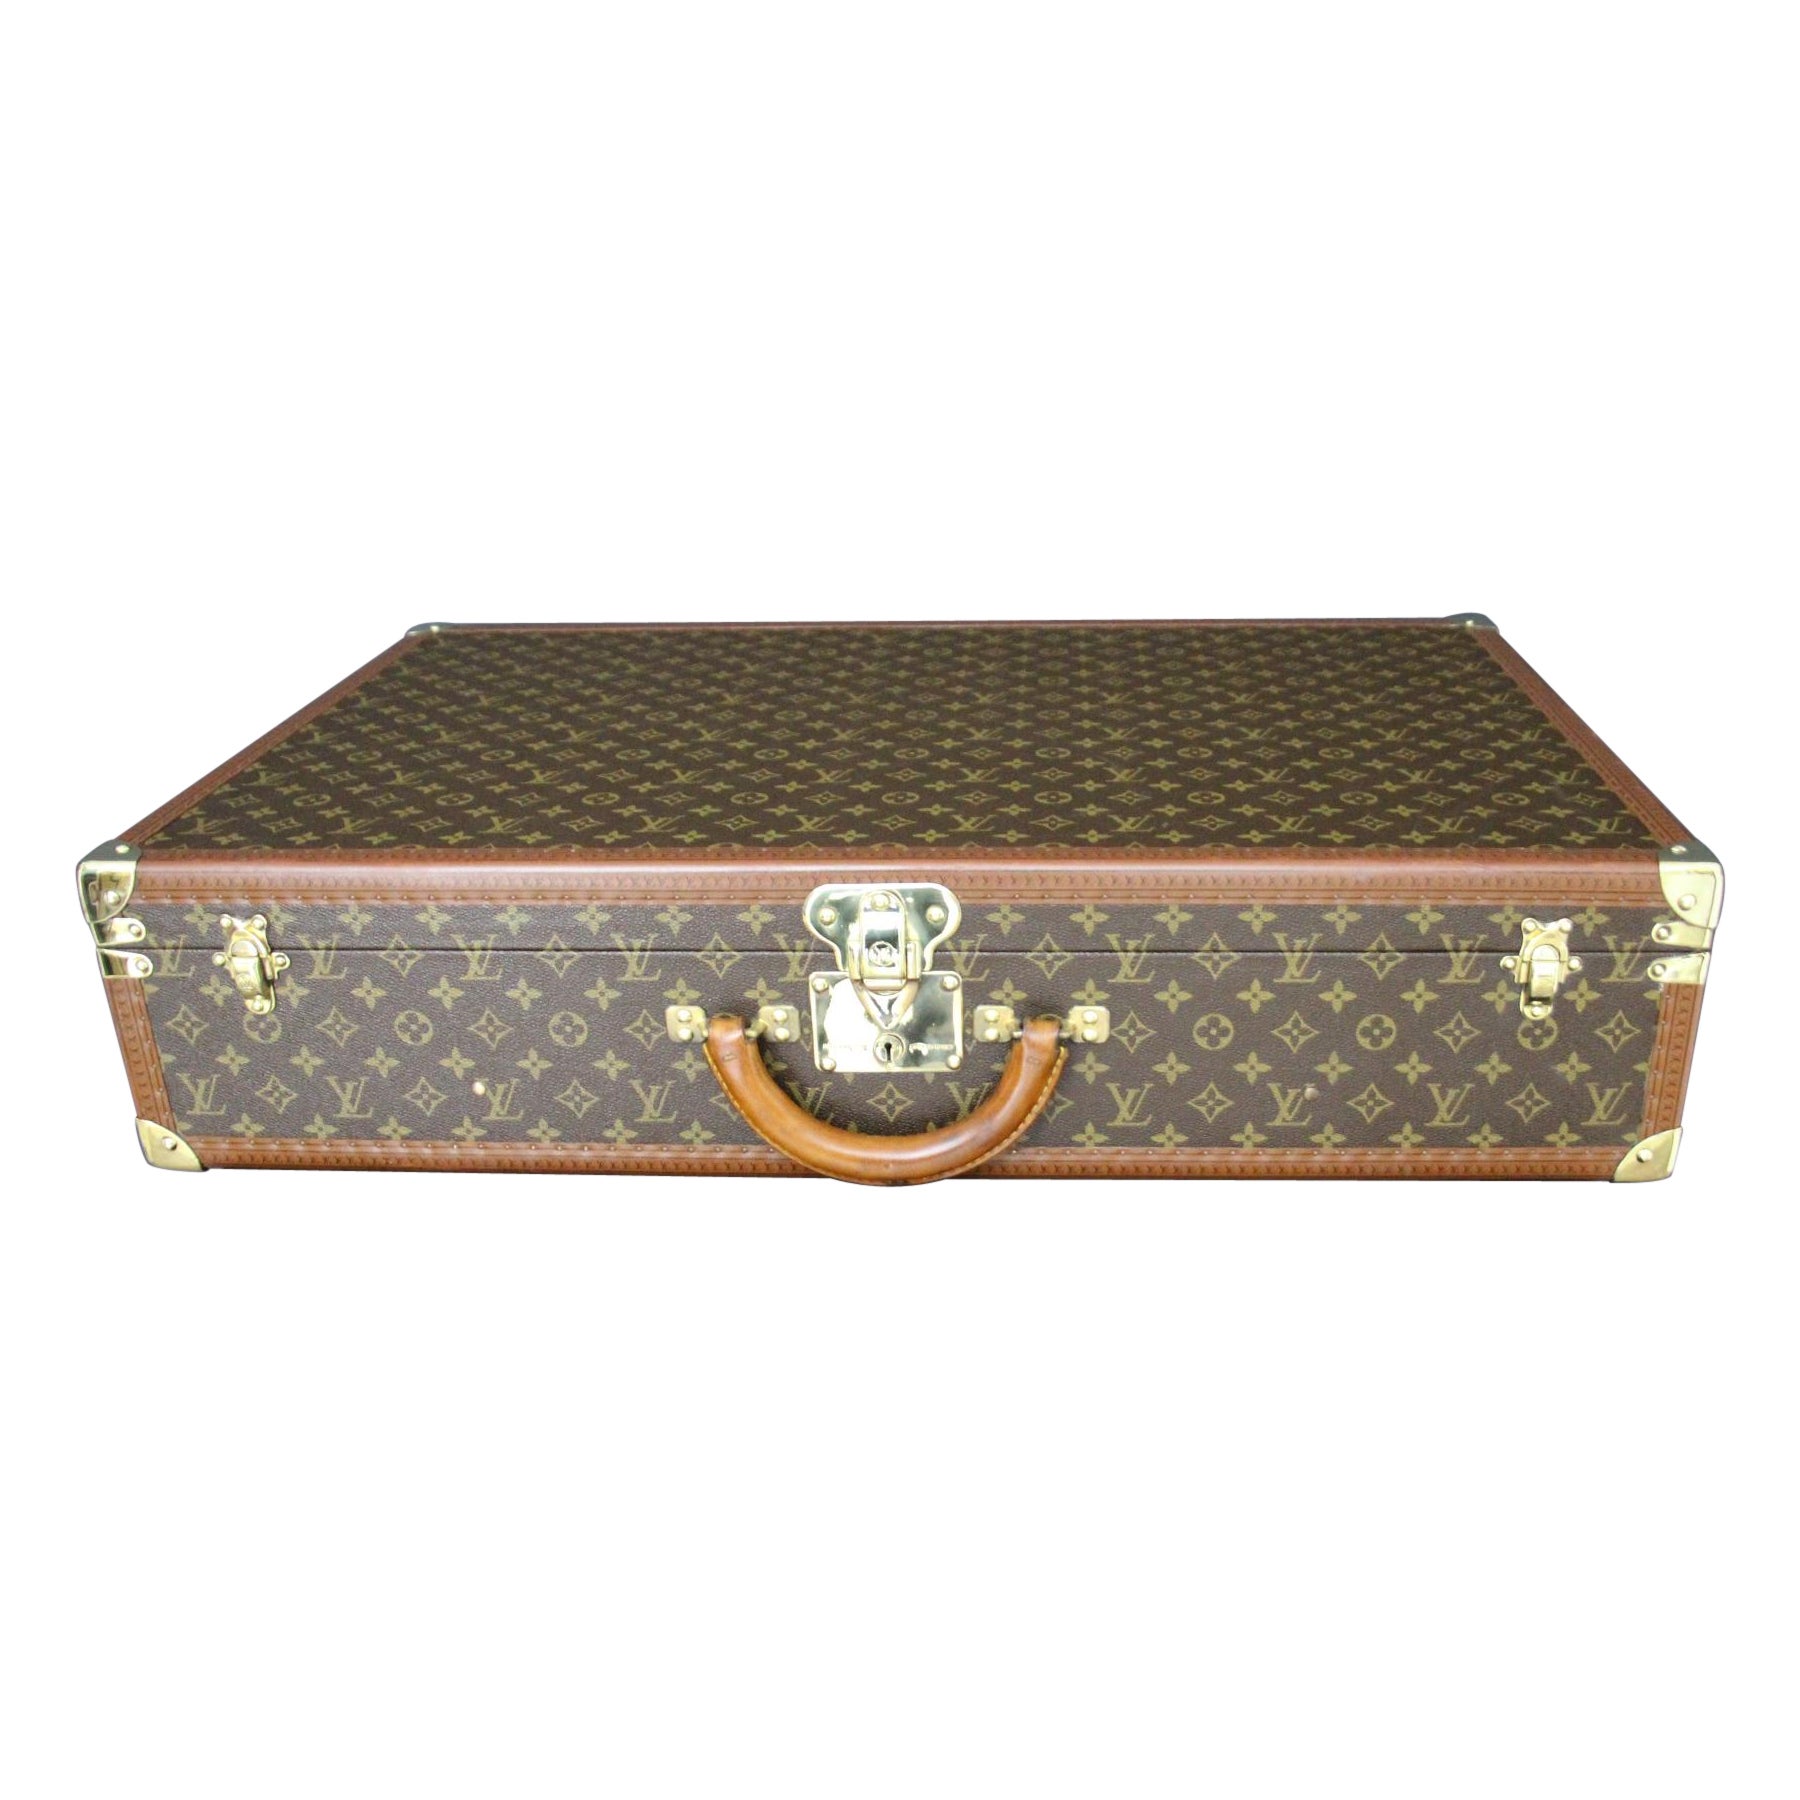  Louis Vuitton Suitcase 80 cm,  80 cm Louis Vuitton Trunk For Sale